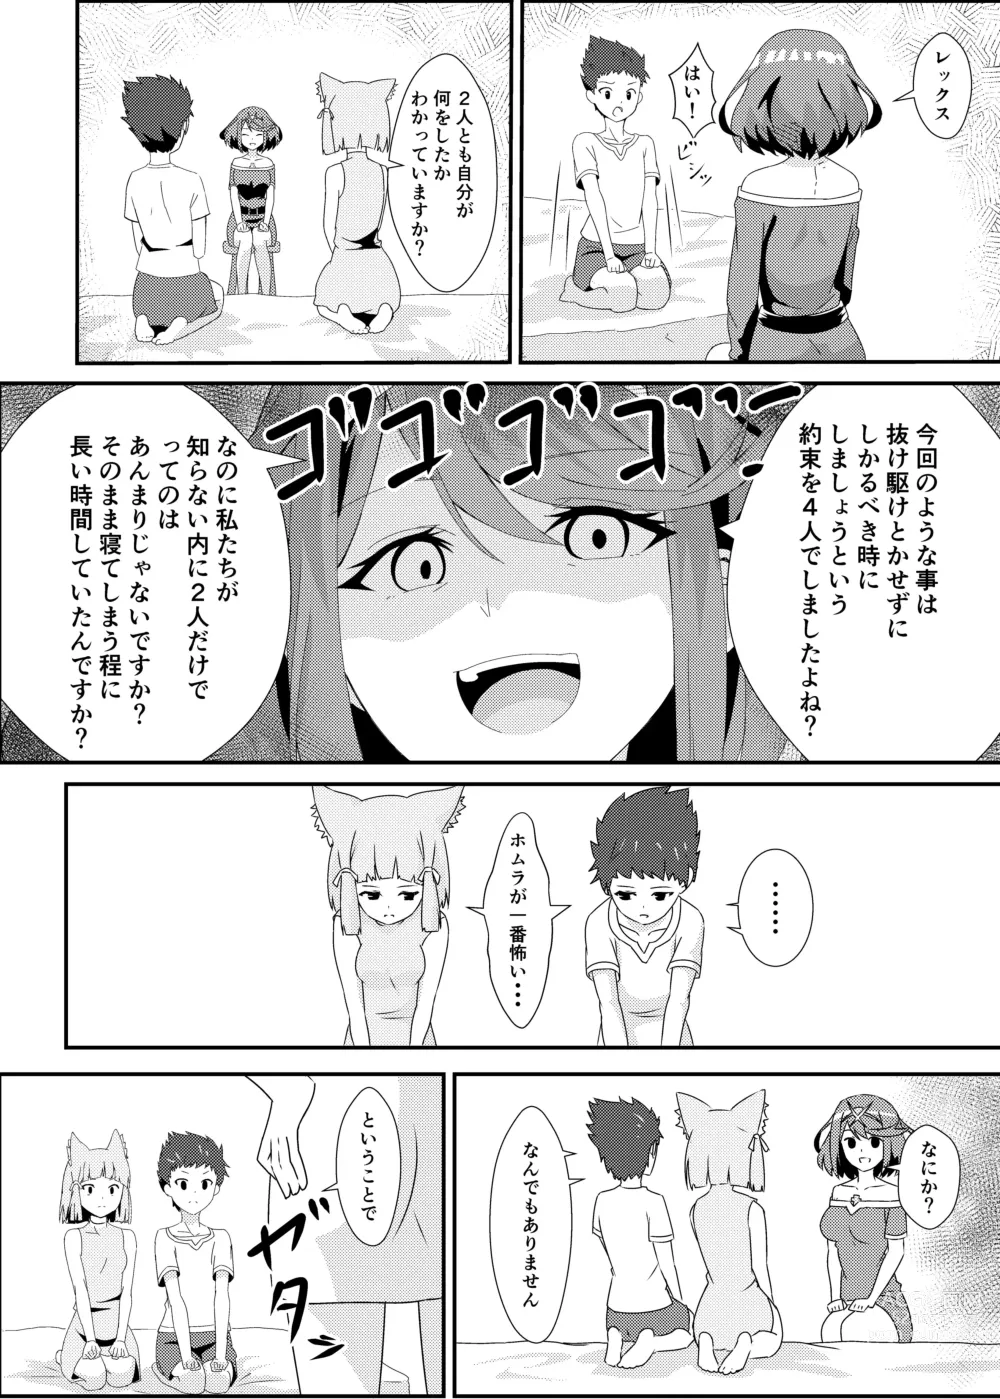 Page 10 of doujinshi Nyan Nyan Nia-chan 2